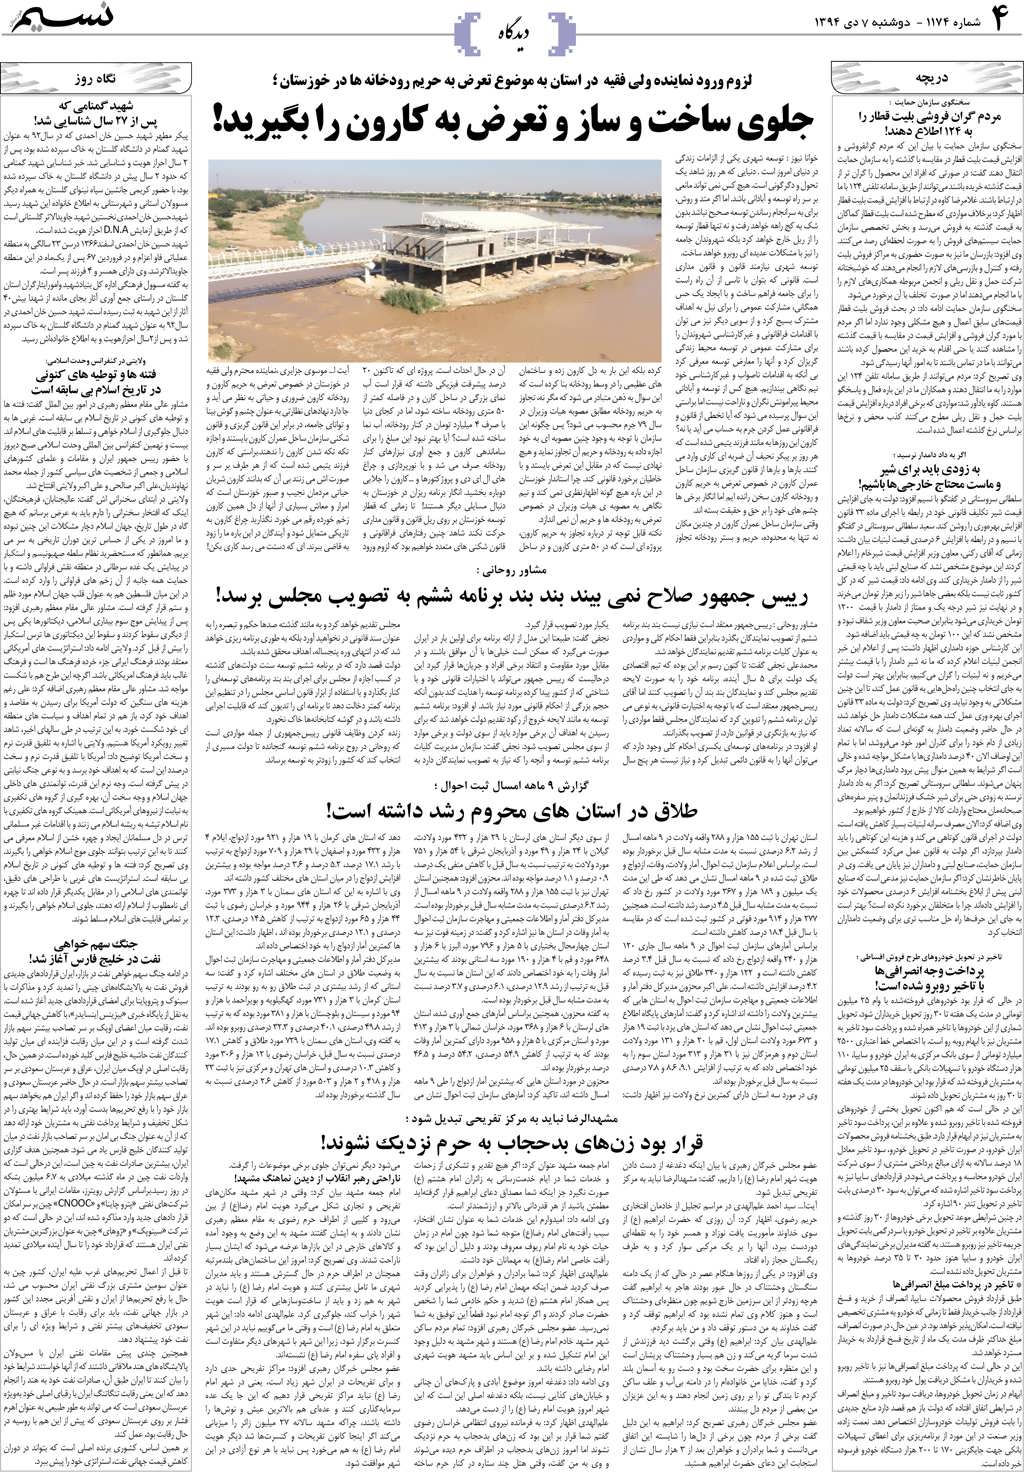 صفحه دیدگاه روزنامه نسیم شماره 1174